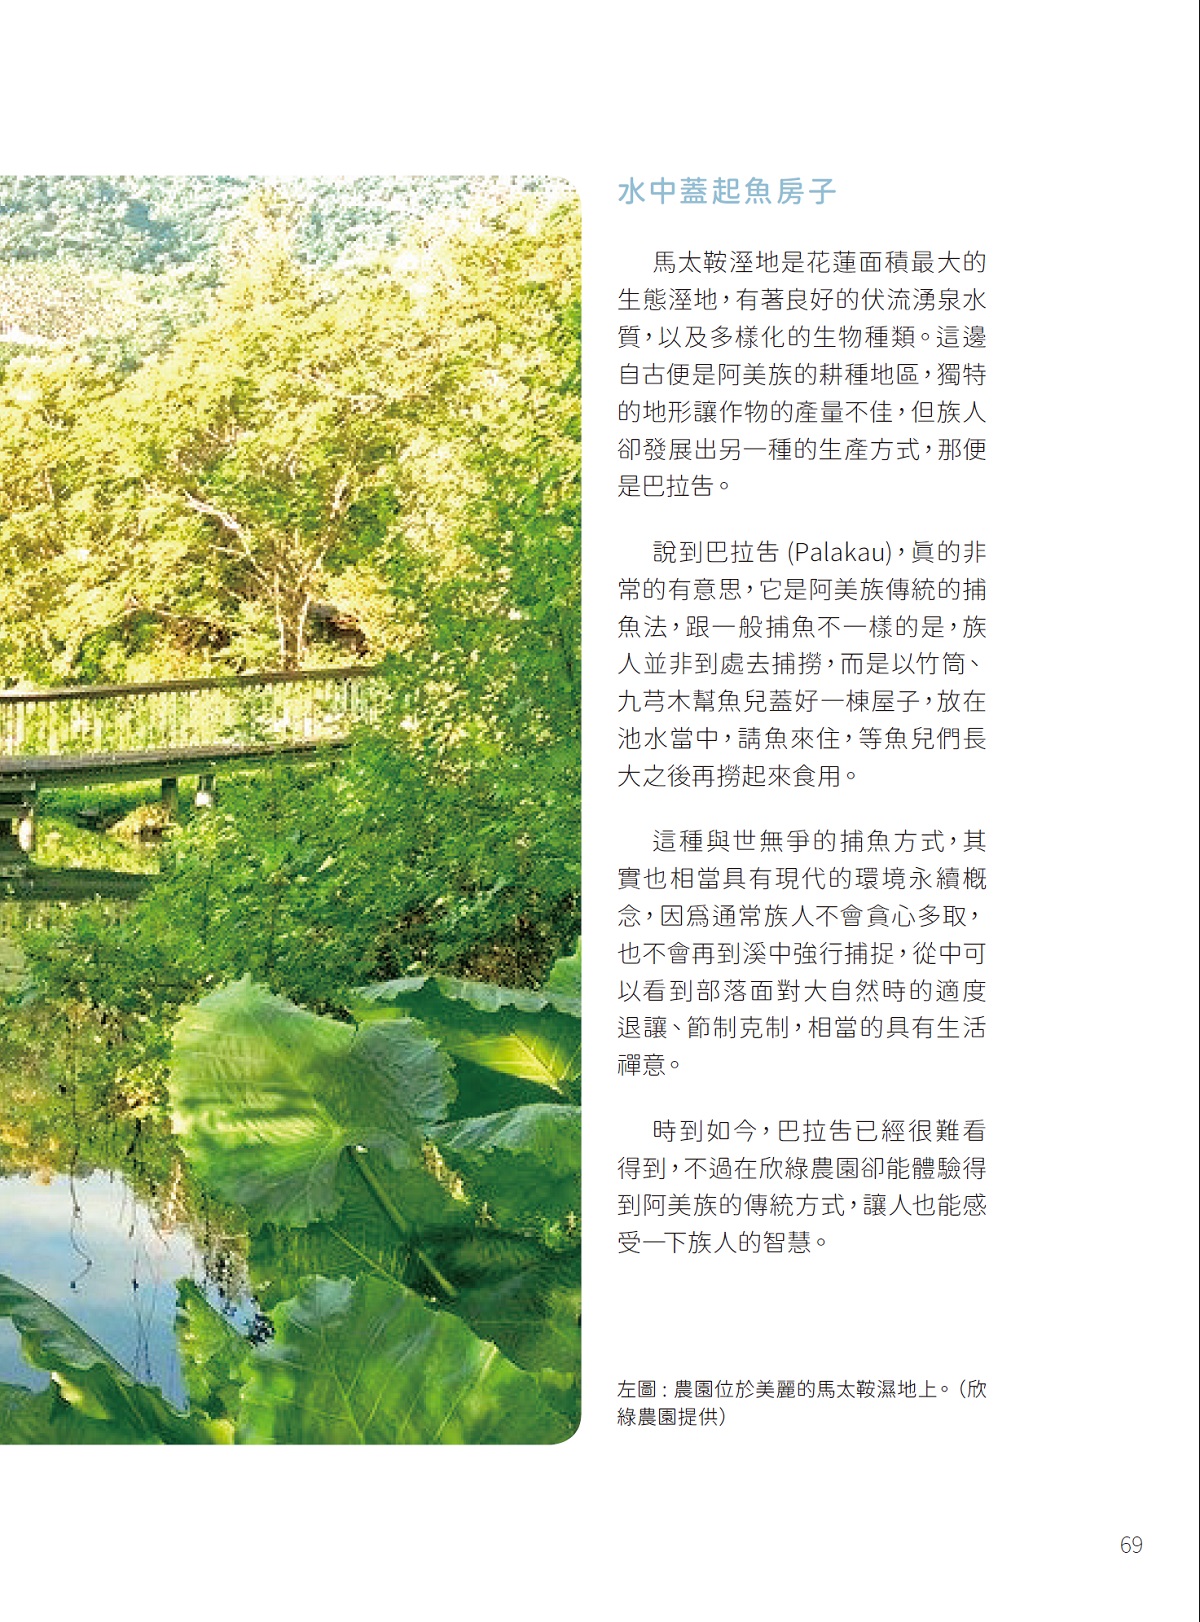 「濃濃原民風」—體驗阿美風情欣綠農園Shin-Liu Farm-4